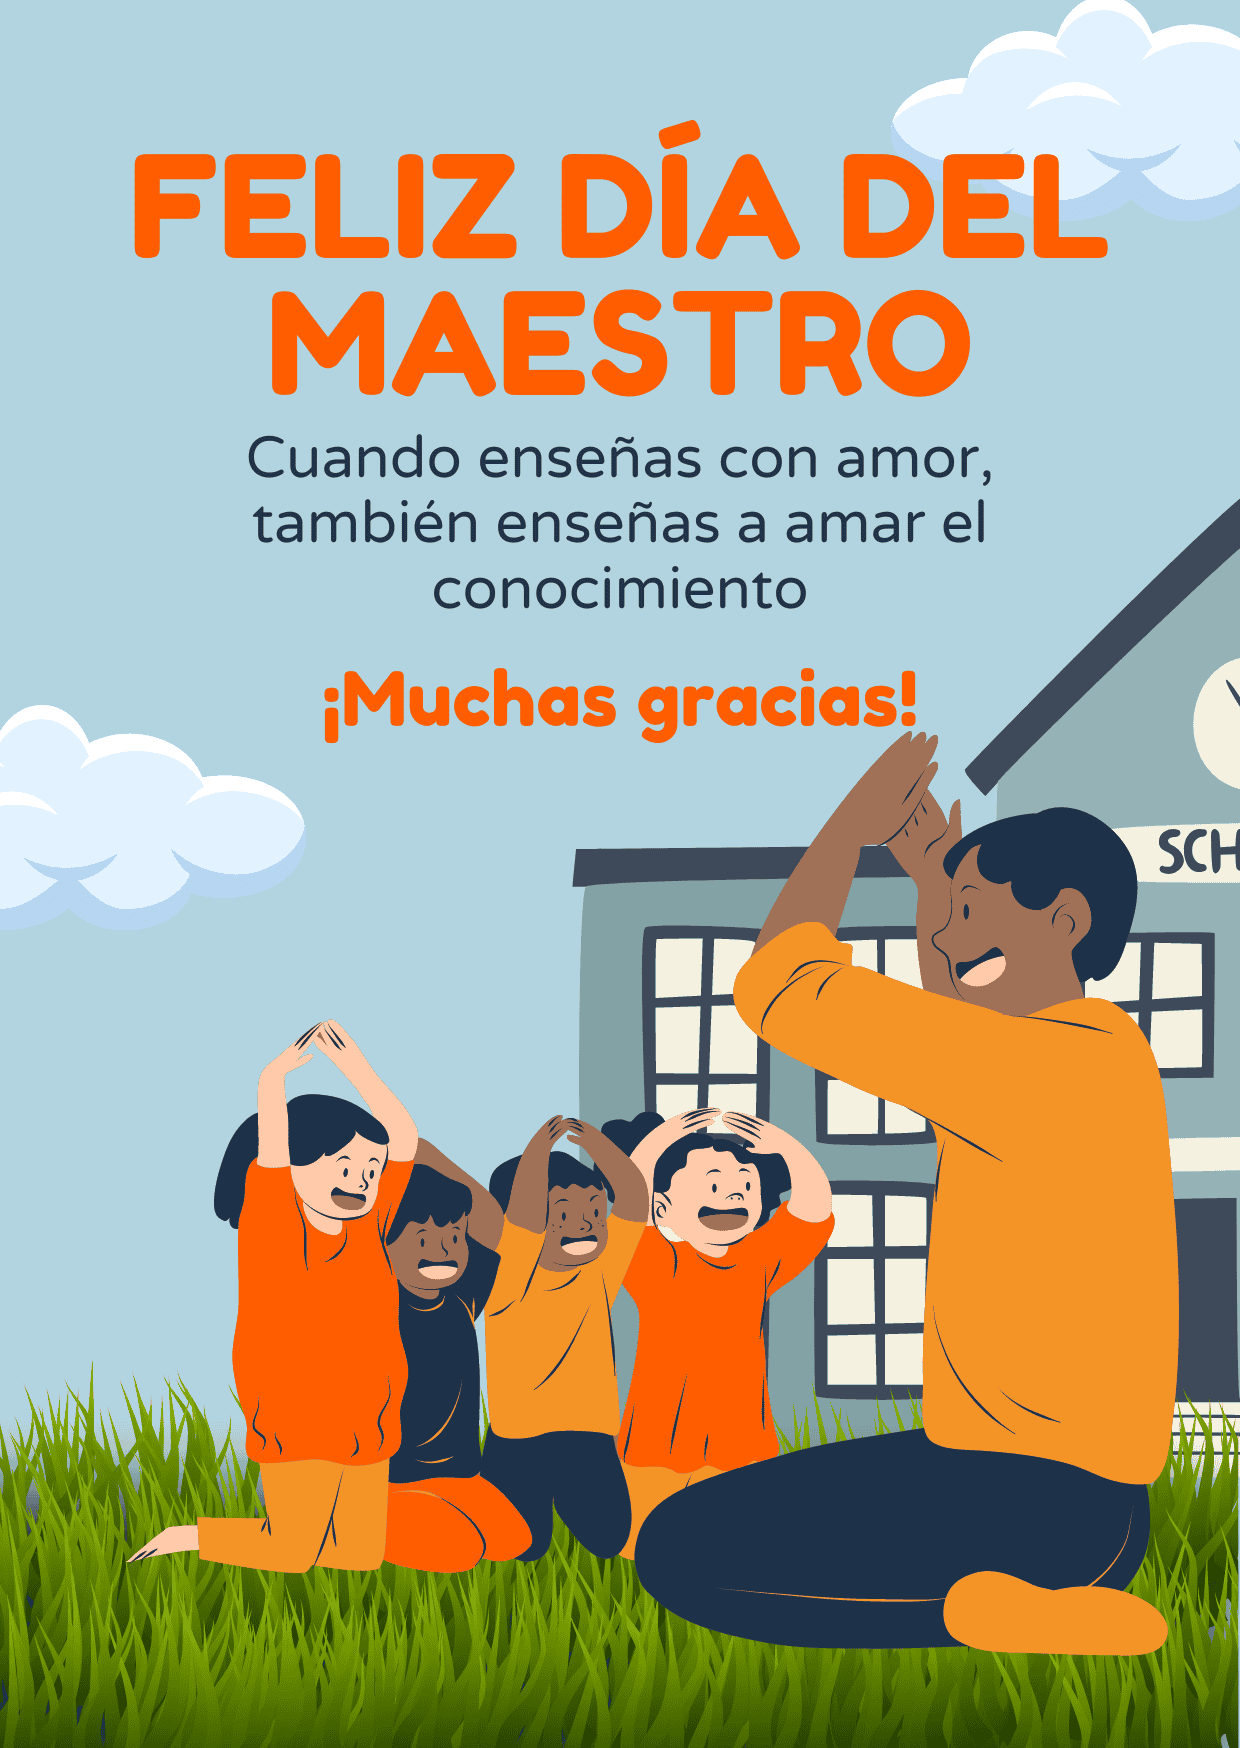 Frases para dedicar este 15 de mayo, Día del Maestro en México.